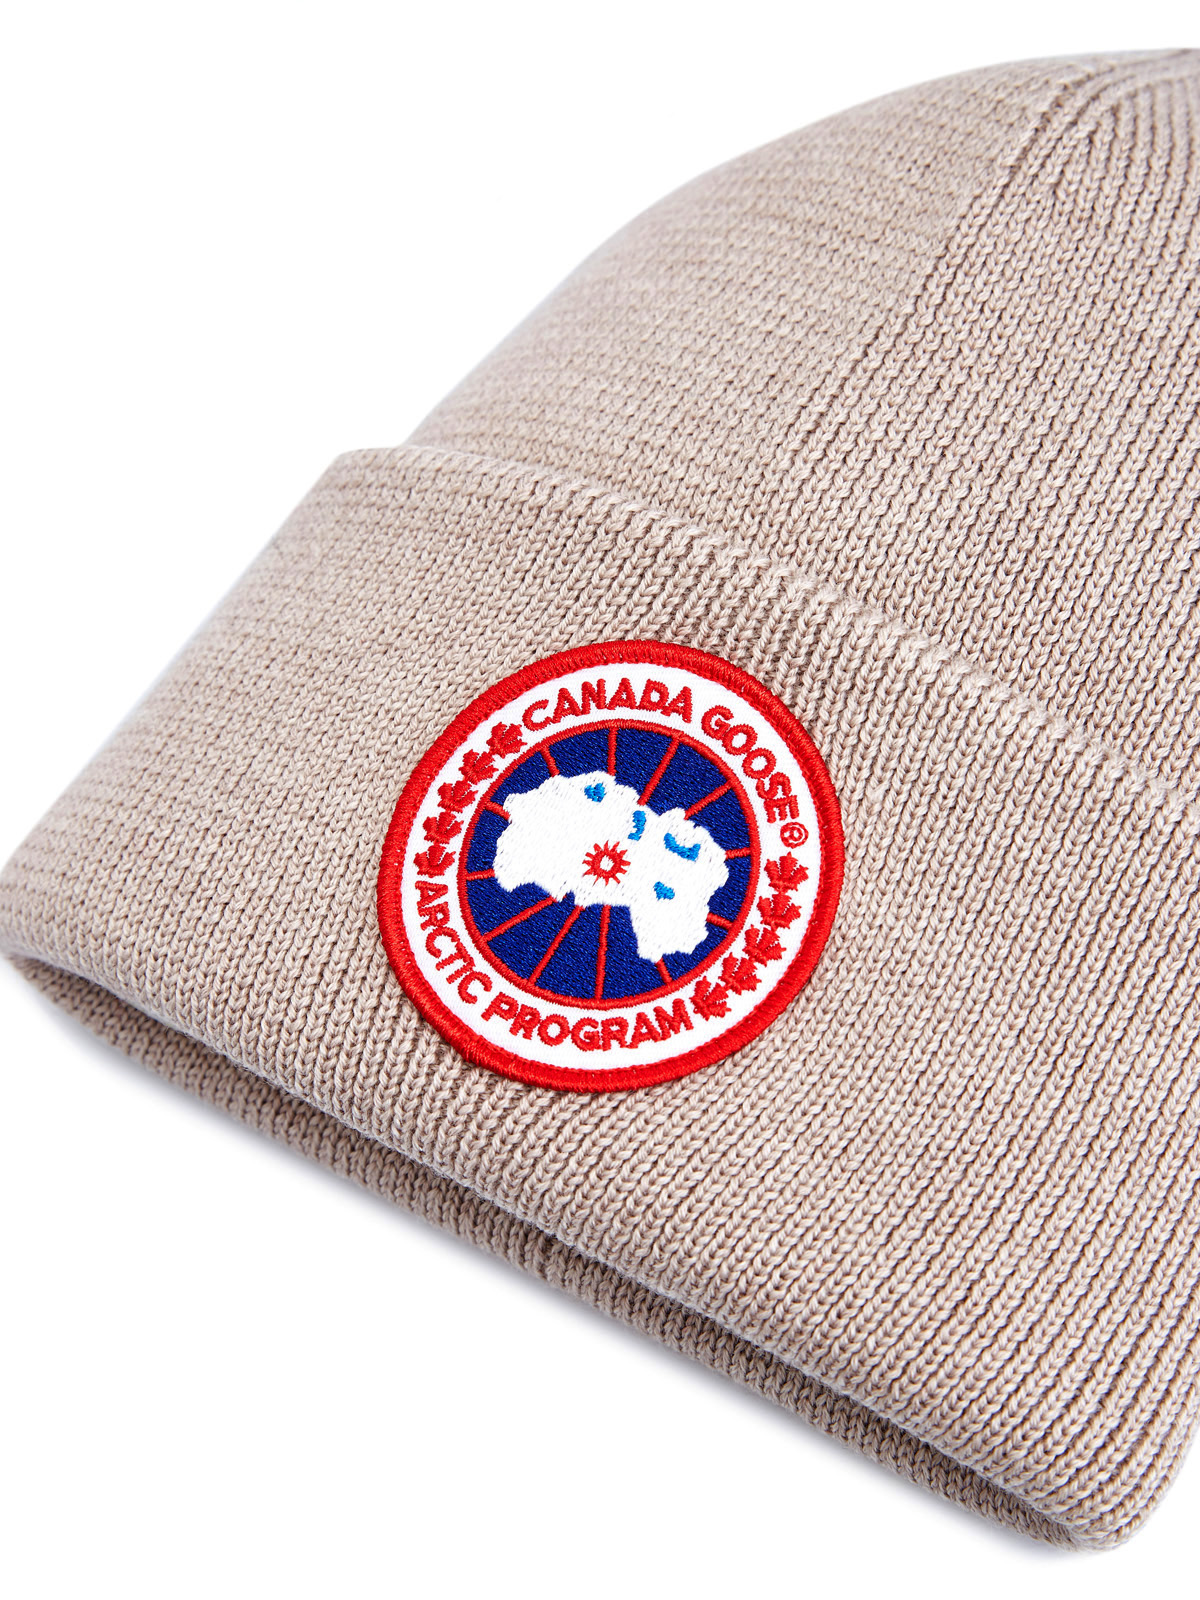 Шапка из двойной шерсти эластичной вязки с логотипом CANADA GOOSE, цвет бежевый, размер 40 - фото 3